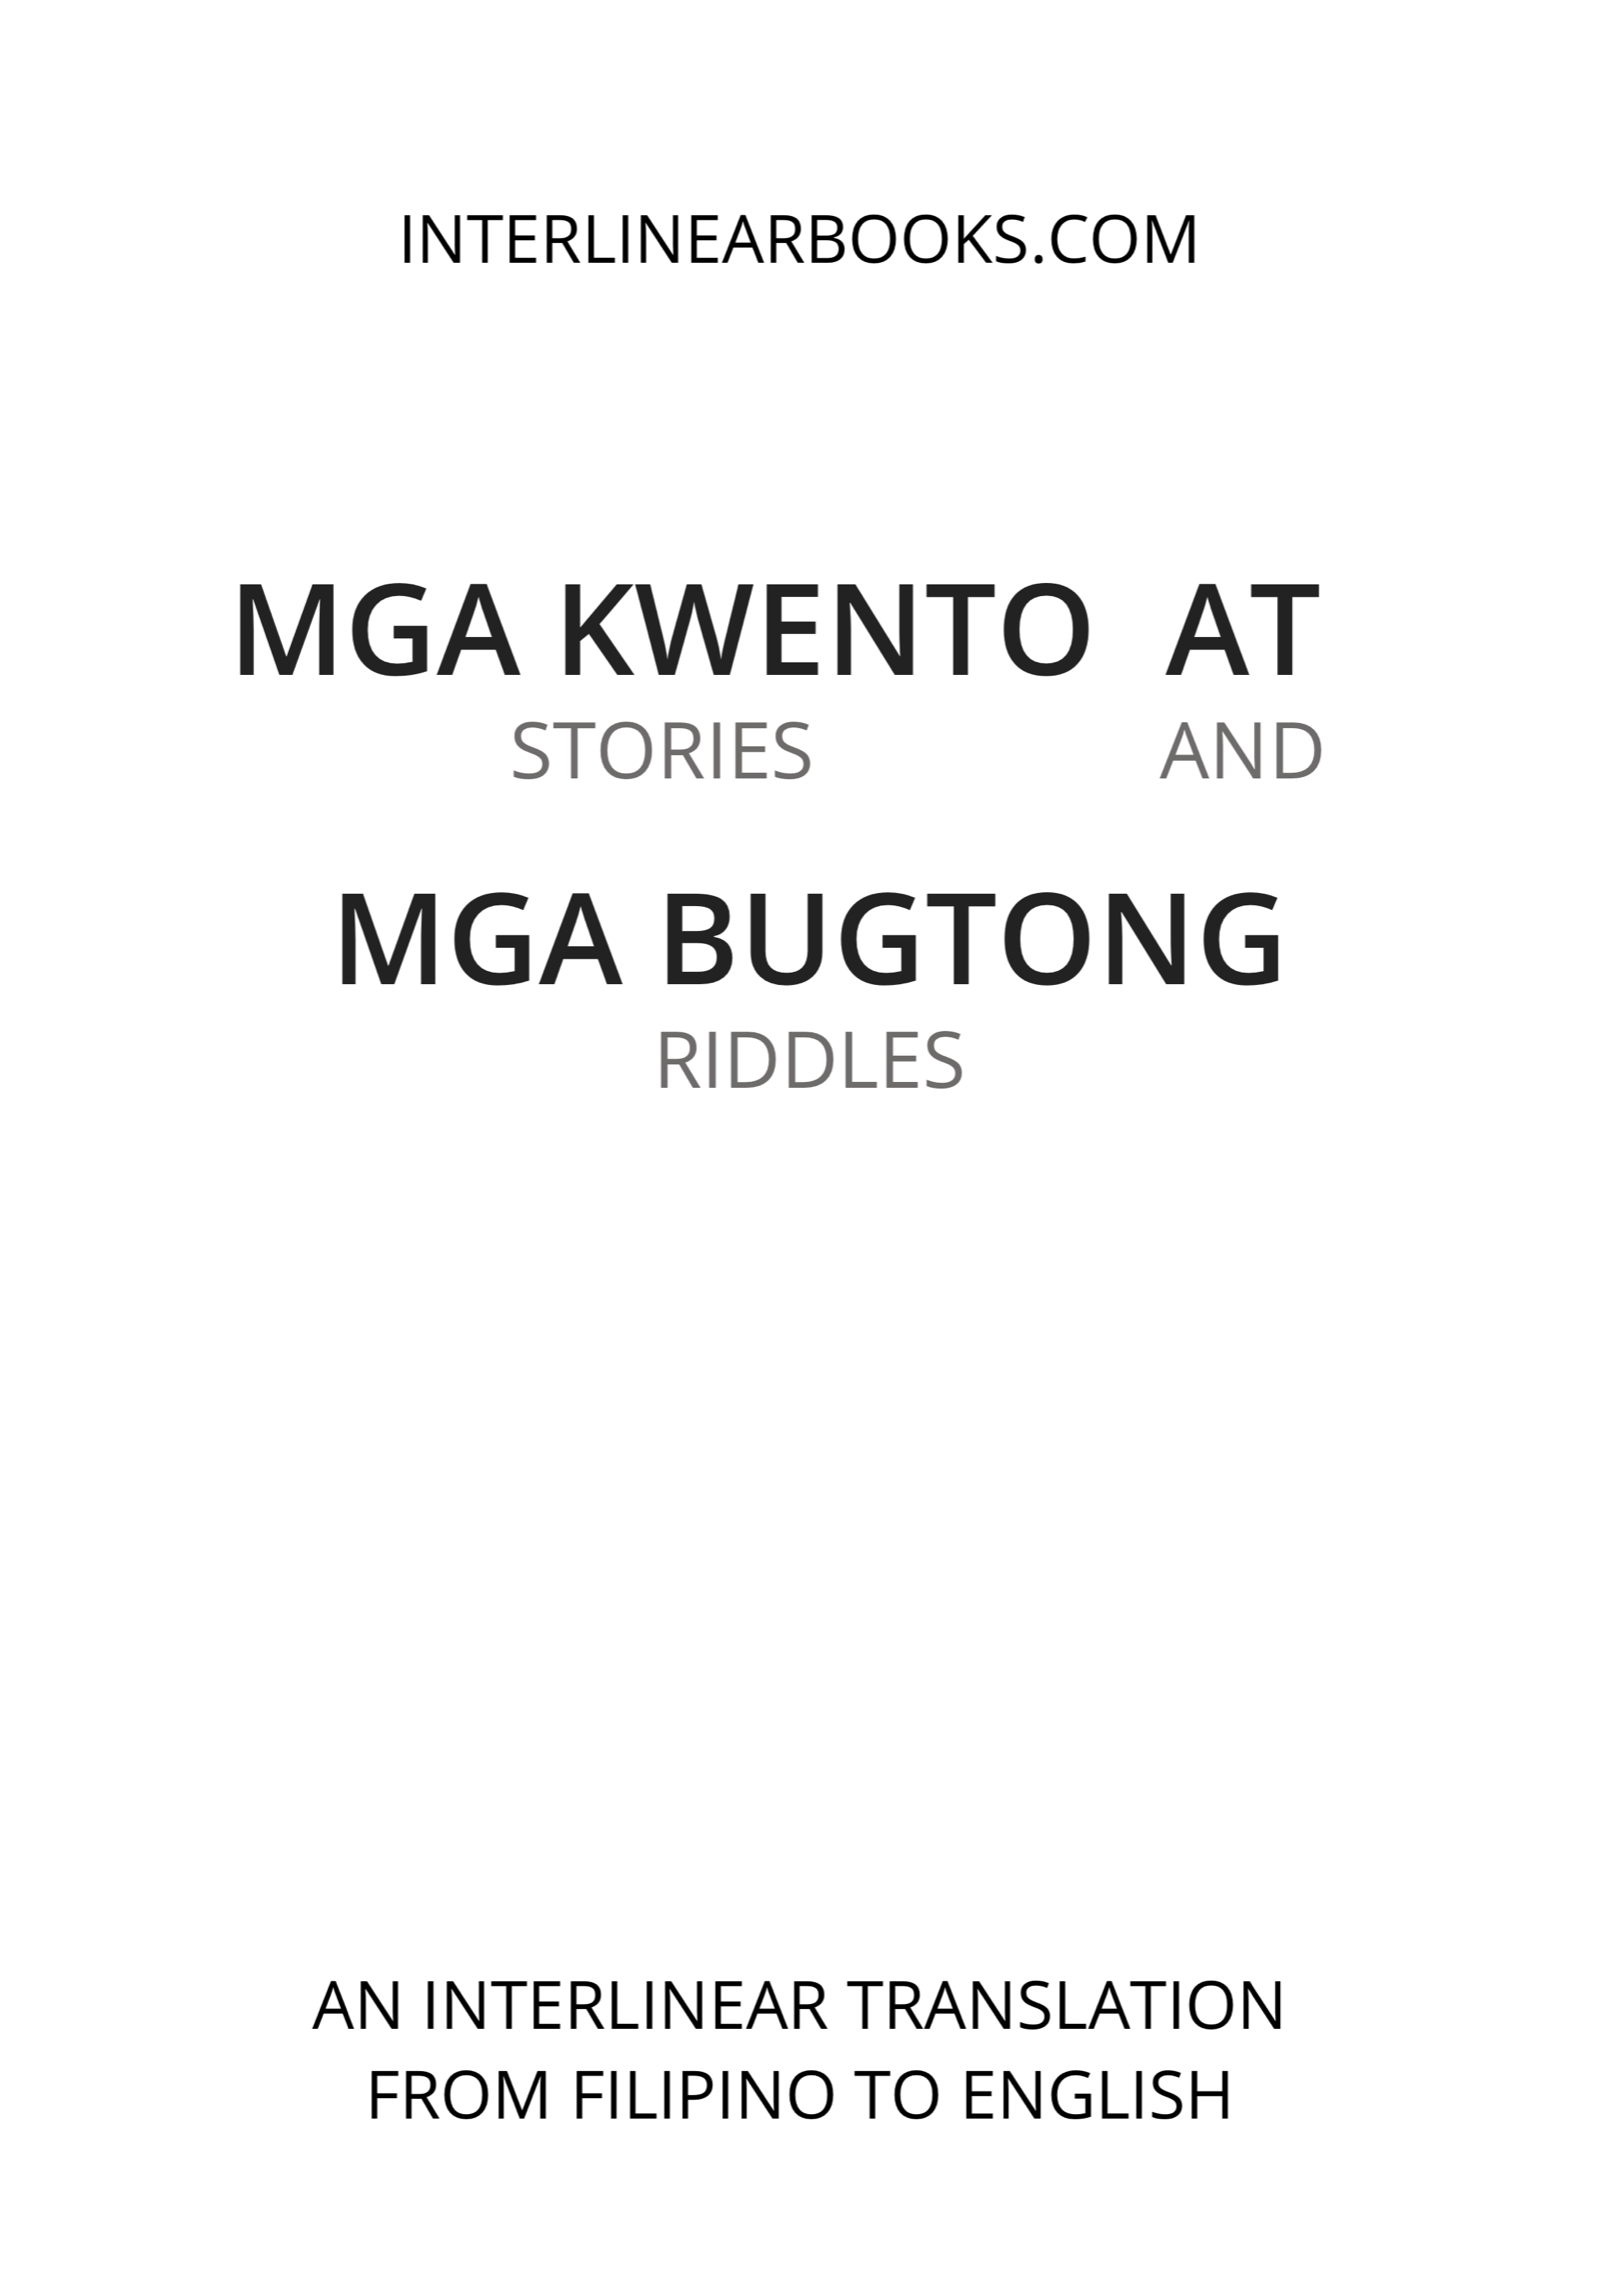 Filipino book: Mga Kwento at Mga Bugtong / Stories and Riddles